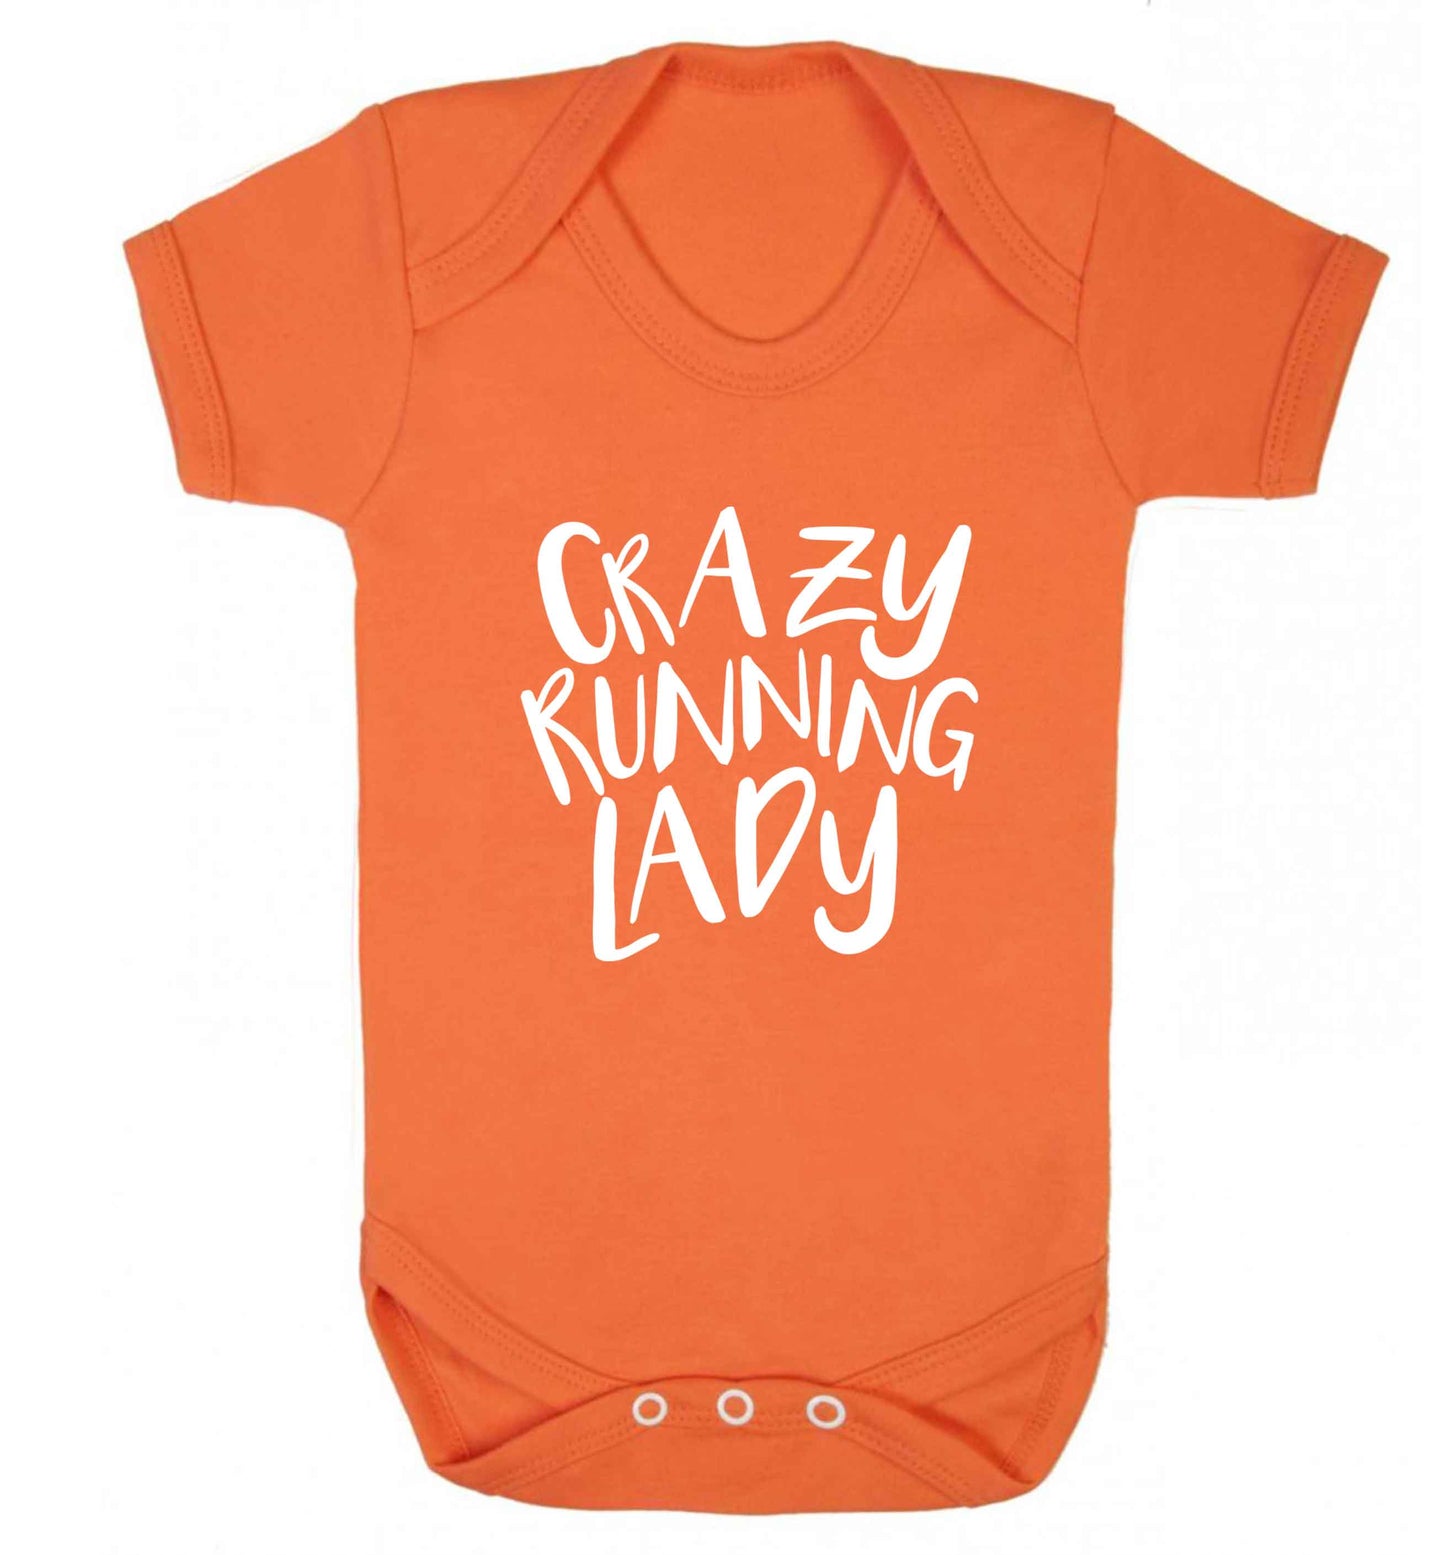 Crazy running lady baby vest orange 18-24 months